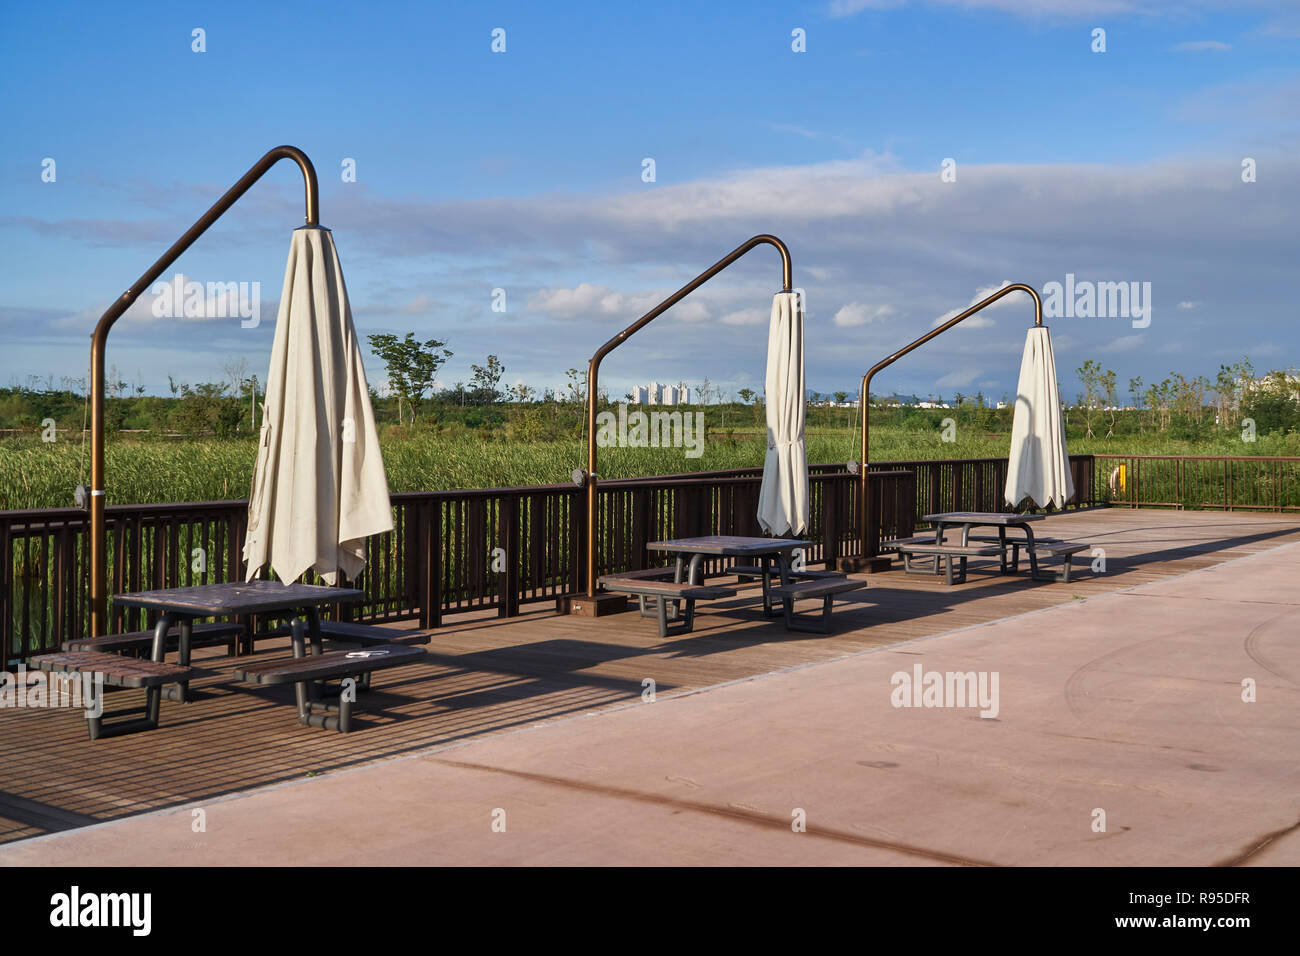 table and patio round offset cantilever umbrella garden parasol in a park Stock Photo